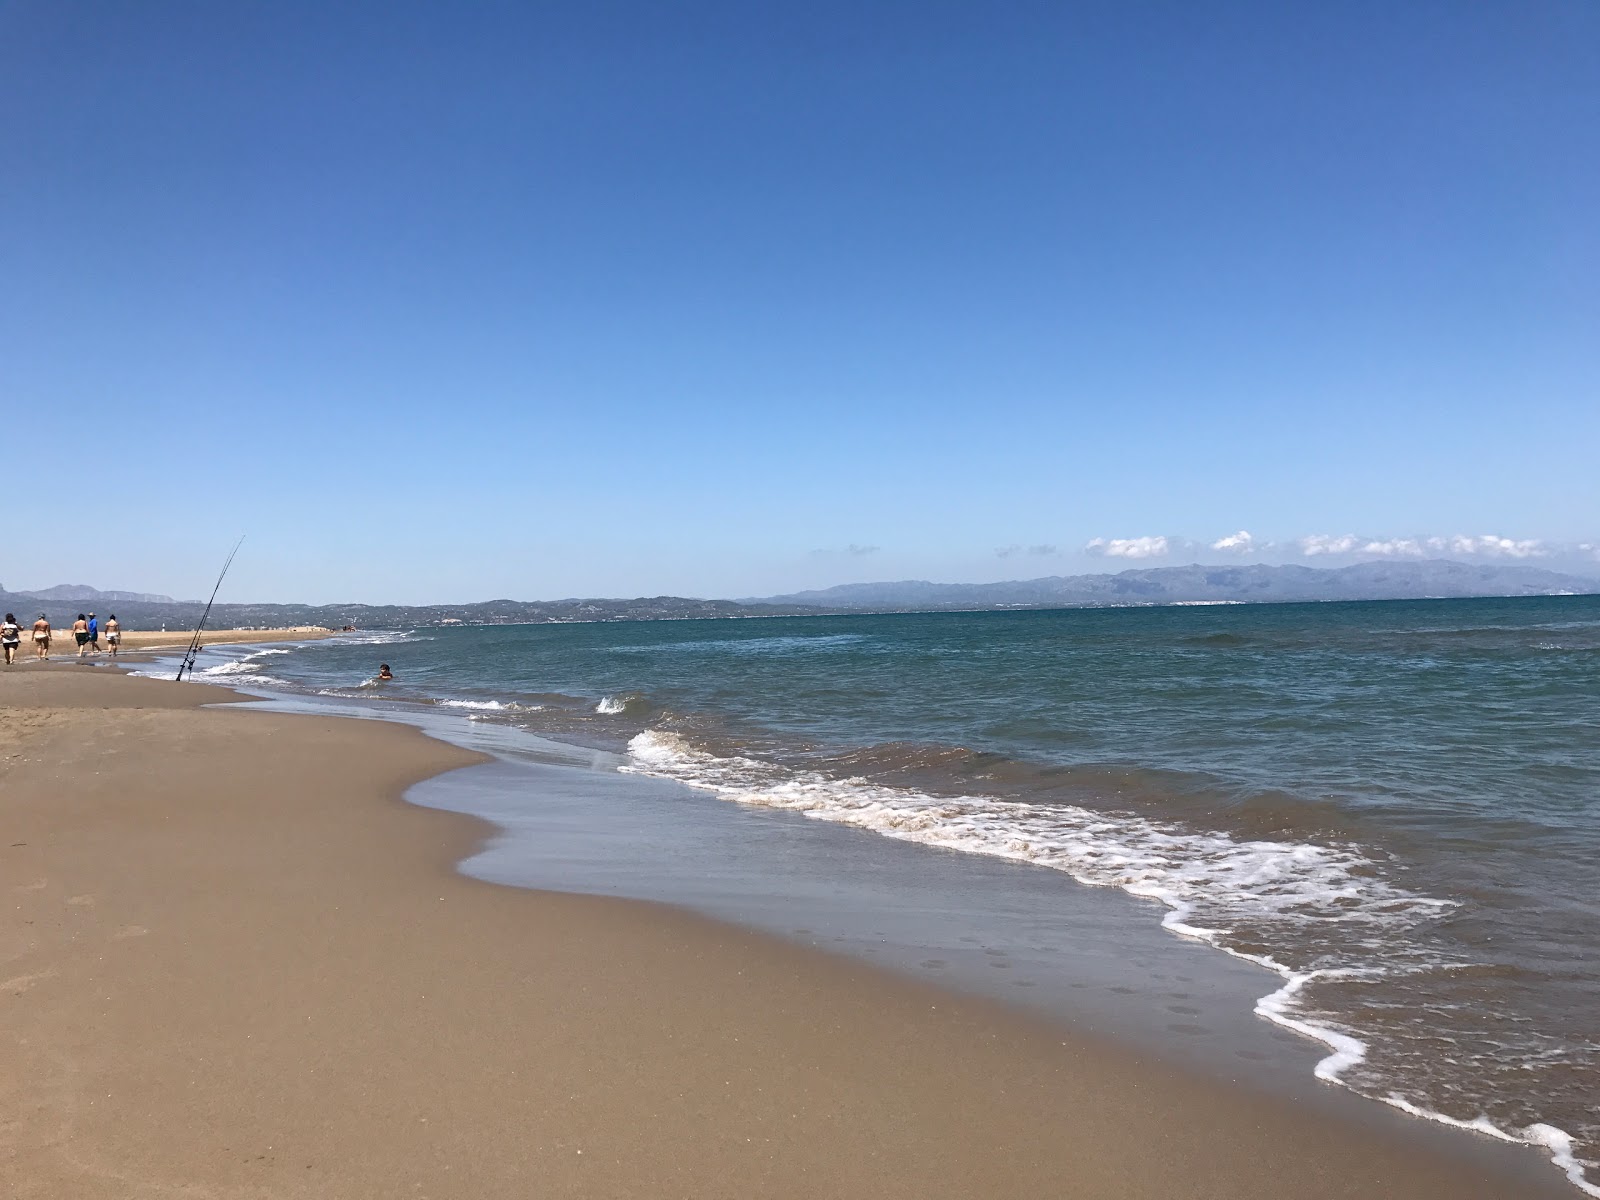 Platja del Fangar'in fotoğrafı kahverengi kum yüzey ile